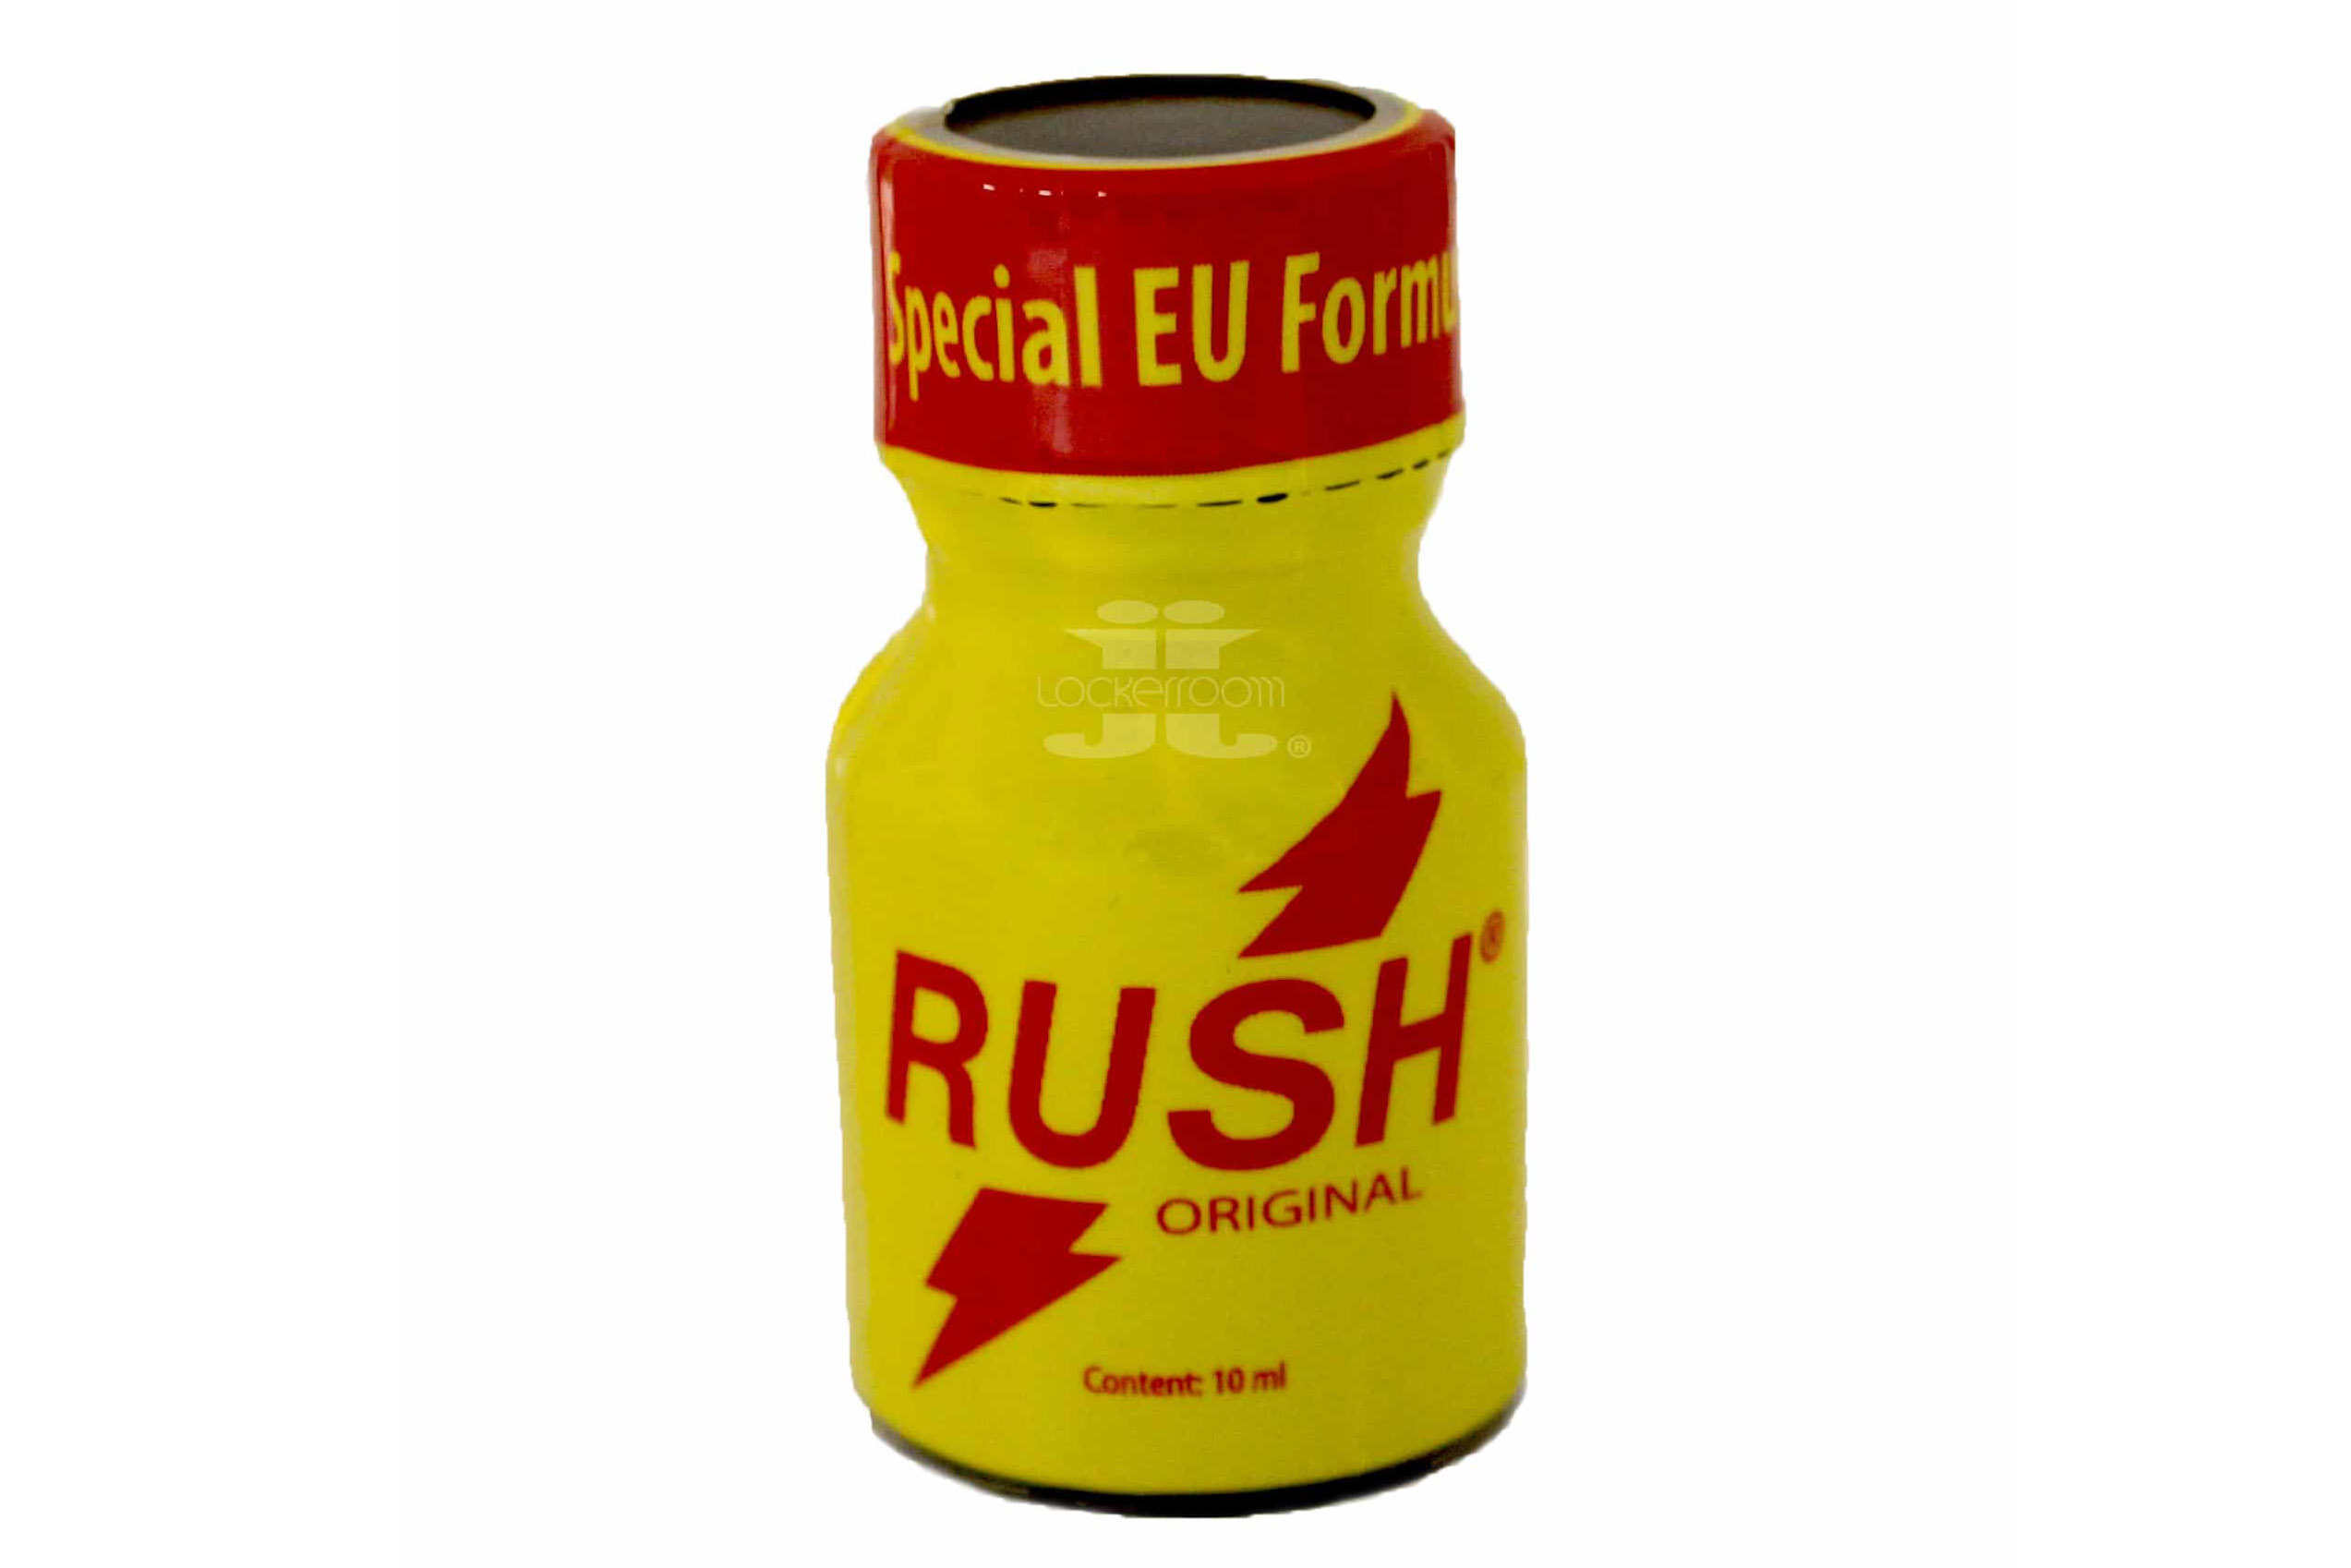 poppers-rush-original-yellow-label-special-eu-formula-10ml